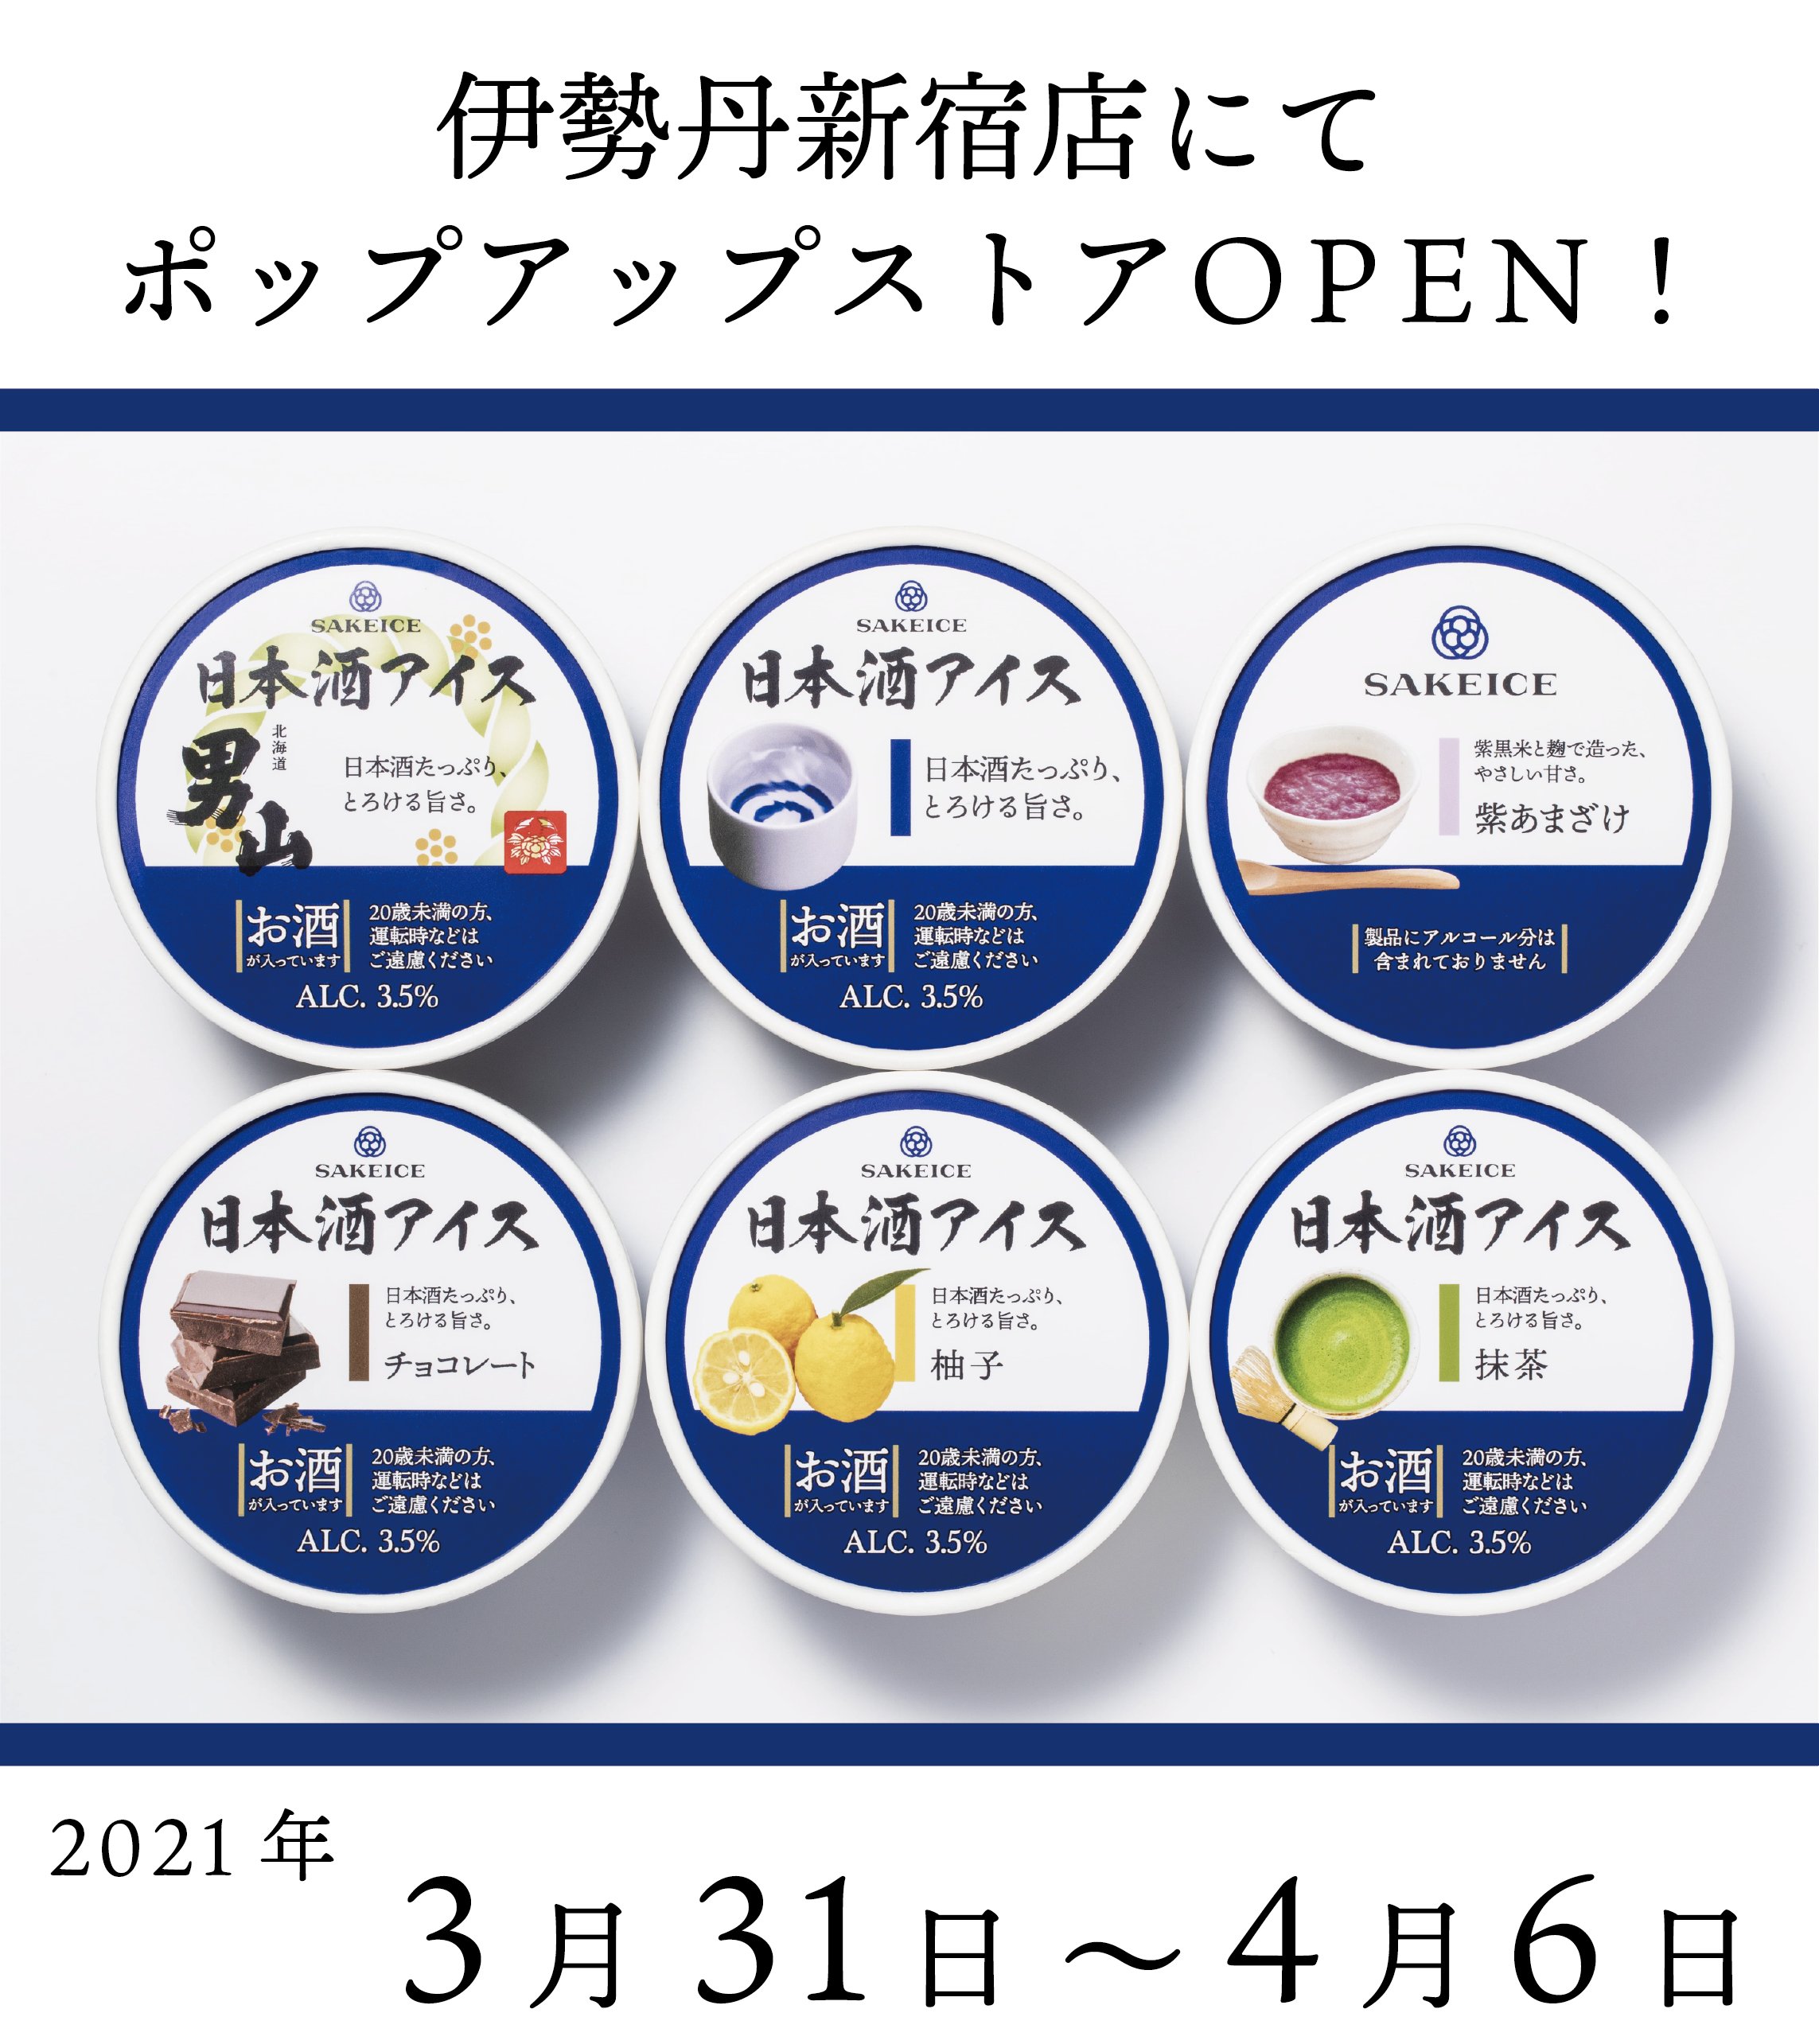 日本酒アイス クリーム専門店 Sakeice サケアイス が伊勢丹新宿店にポップアップストアを21年3月31日 4月6日に限定open 株式会社えだまめのプレスリリース